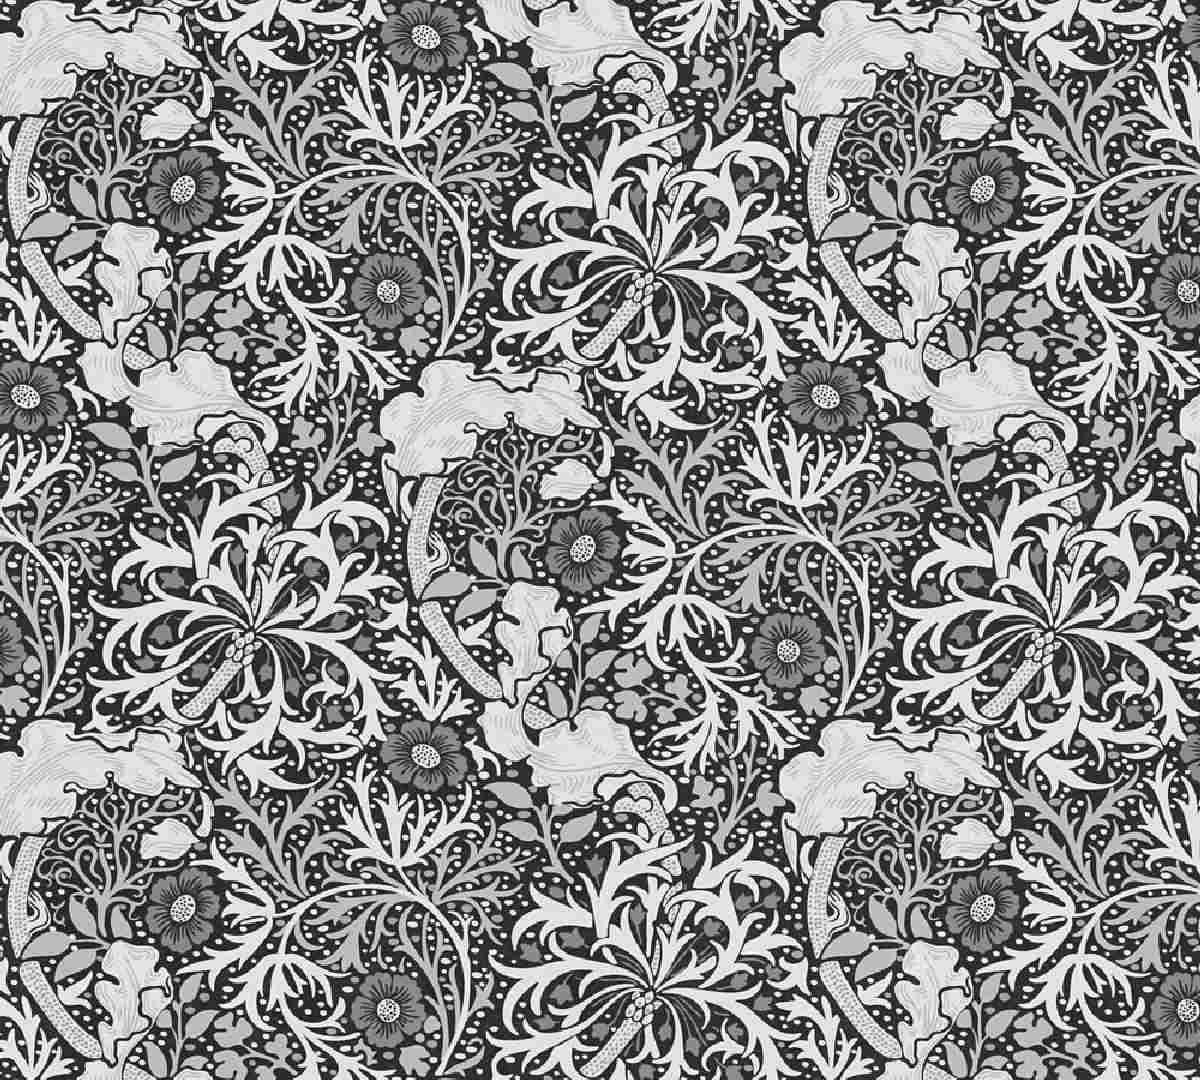 Vliestapete Art of Eden 390595 - Blumentapete Muster - Weiß, Schwarz